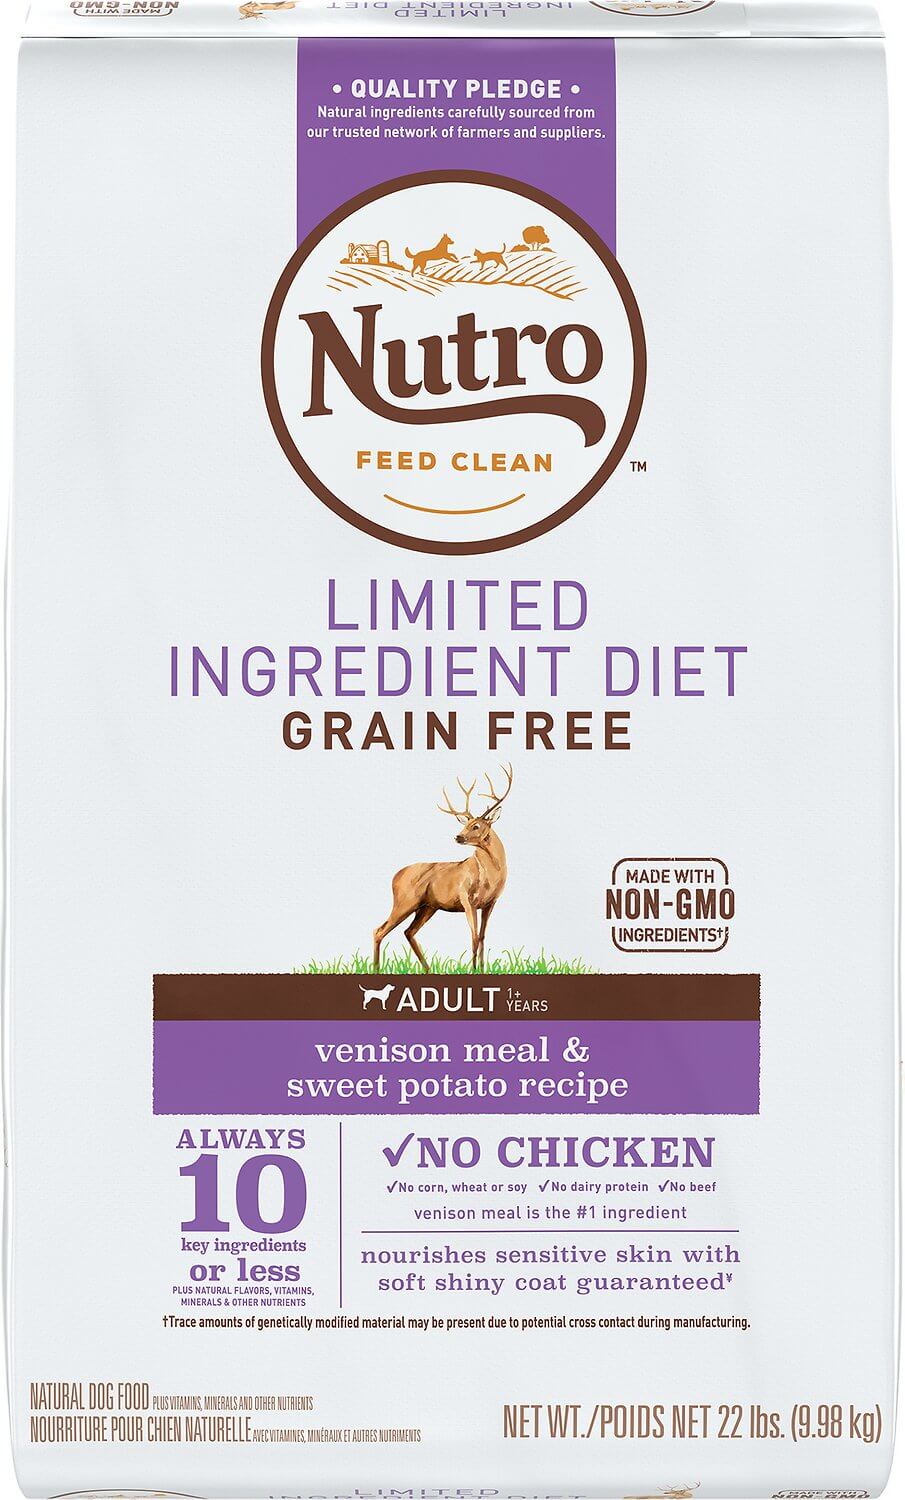 Nutro Limited Ingredient Diet